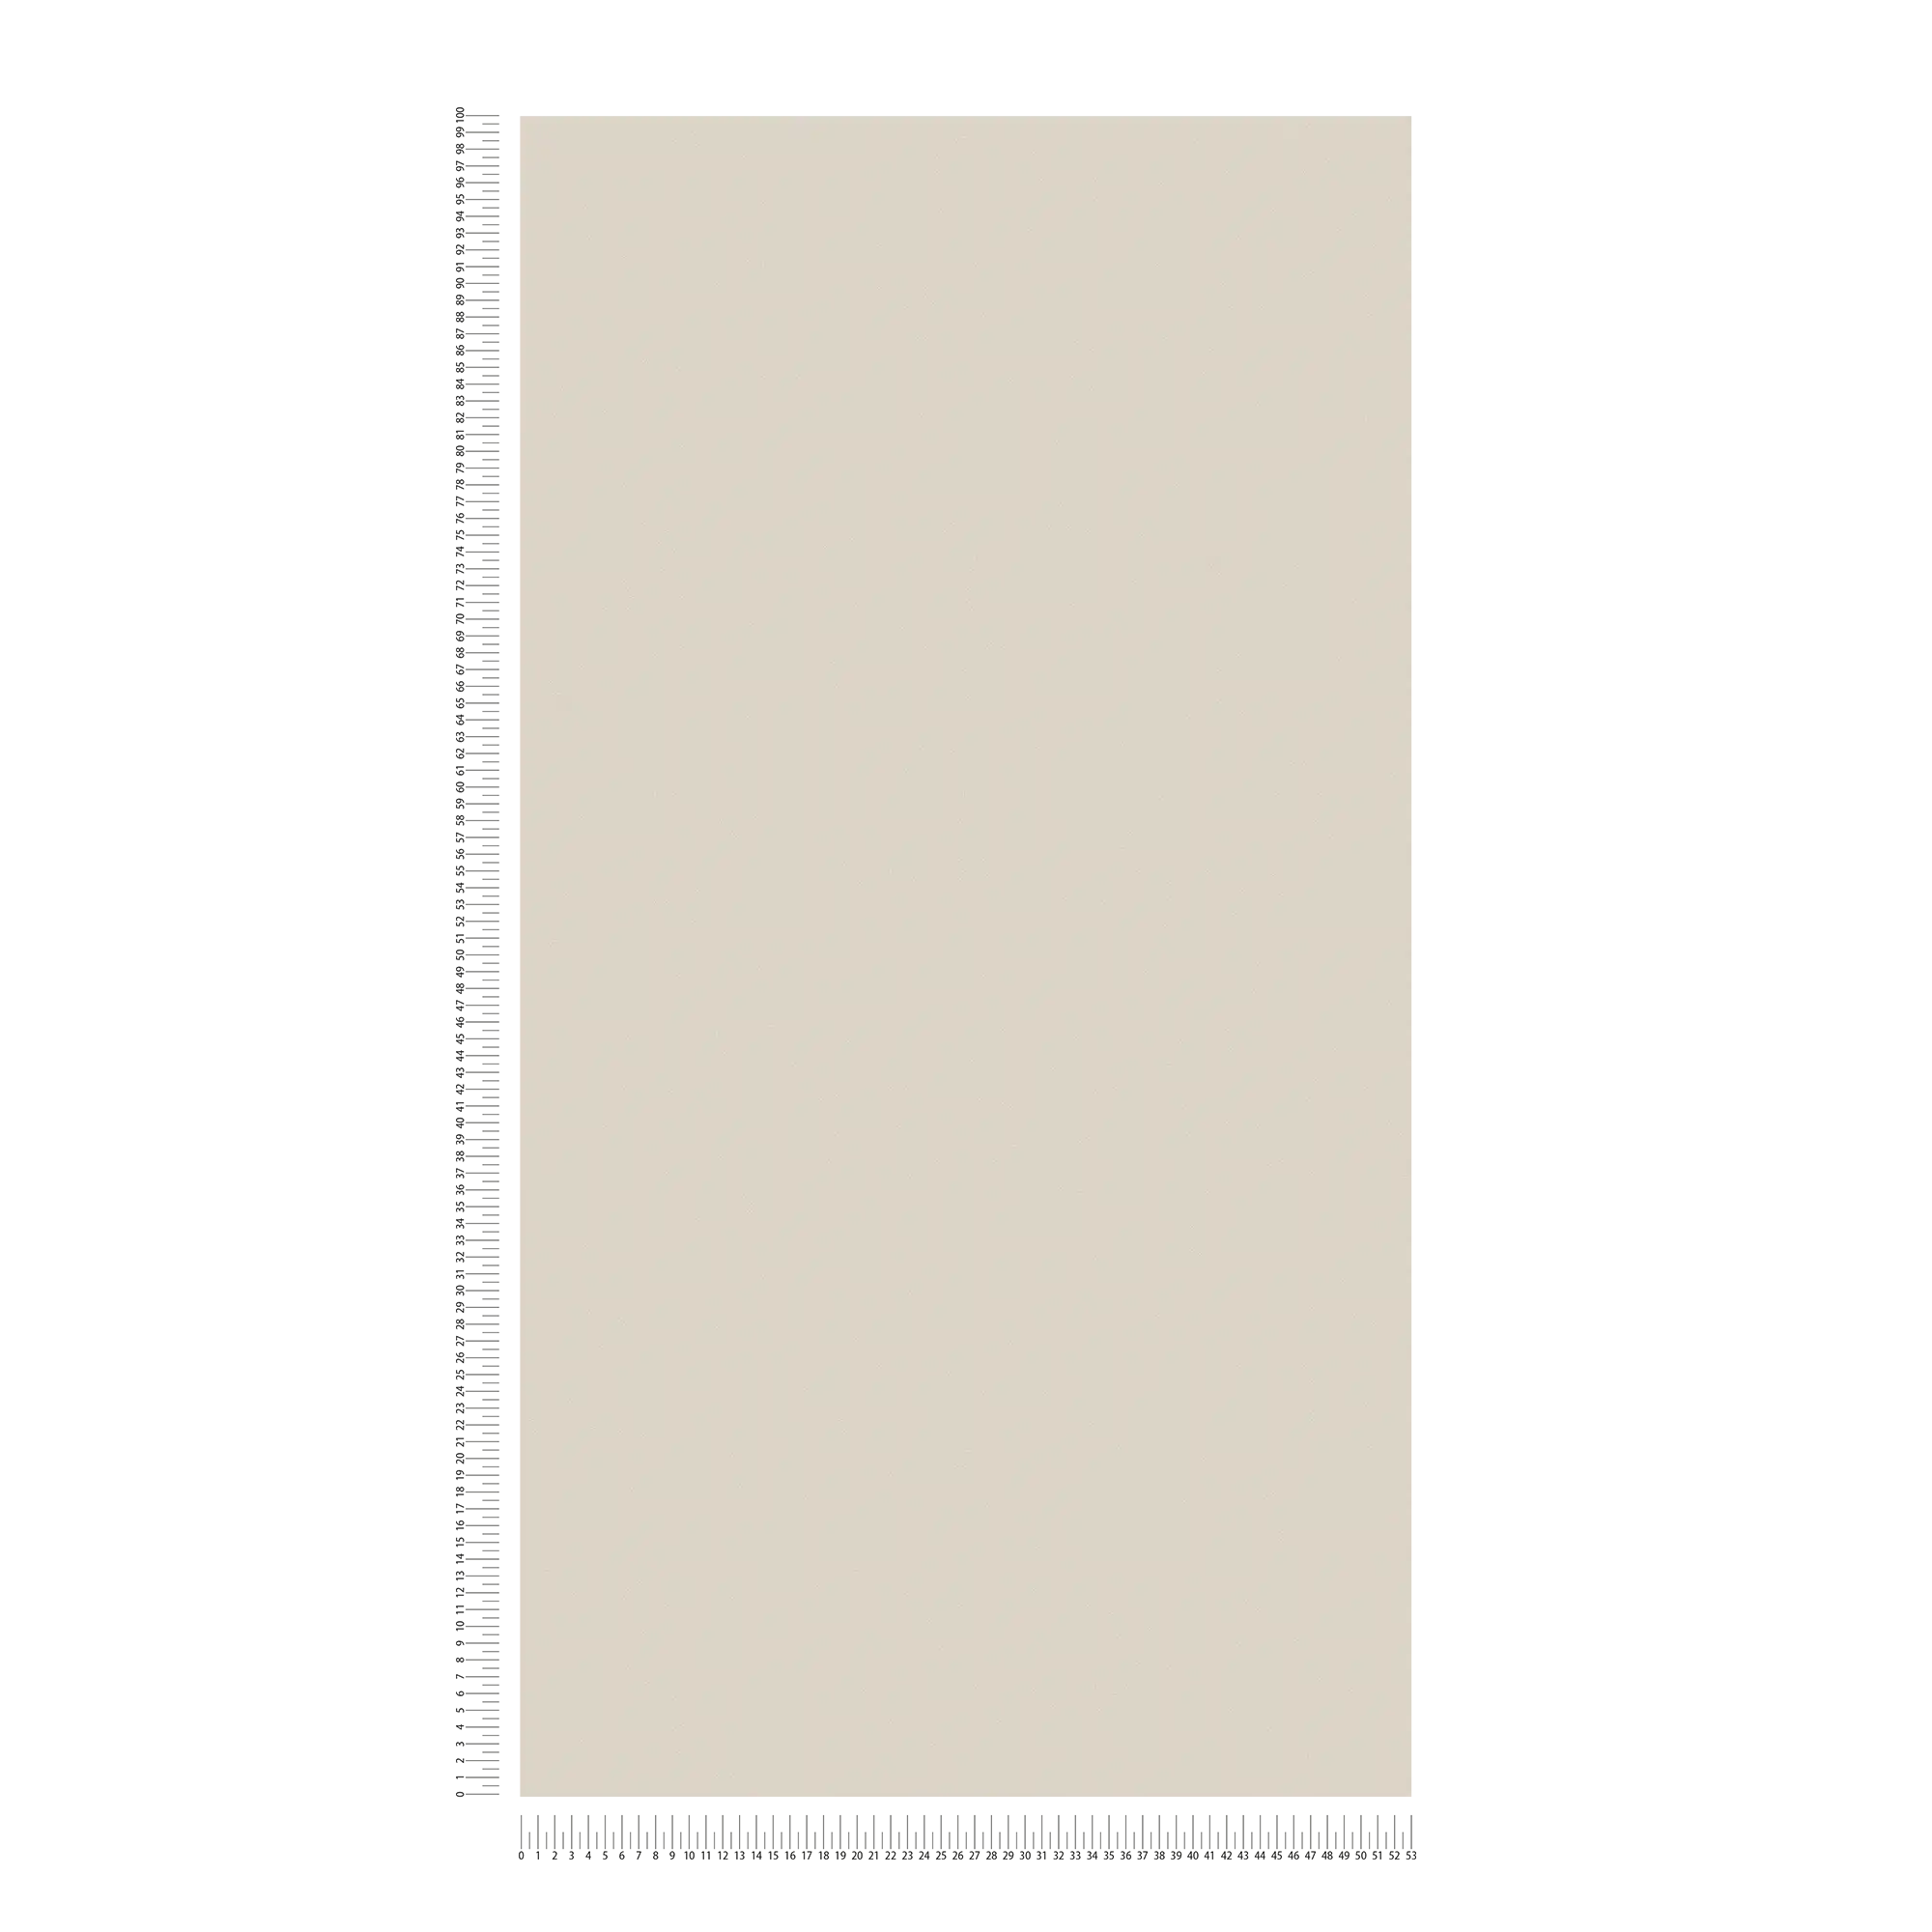             Carta da parati in tessuto non tessuto grigio chiaro seta opaco con un sottile effetto strutturato
        